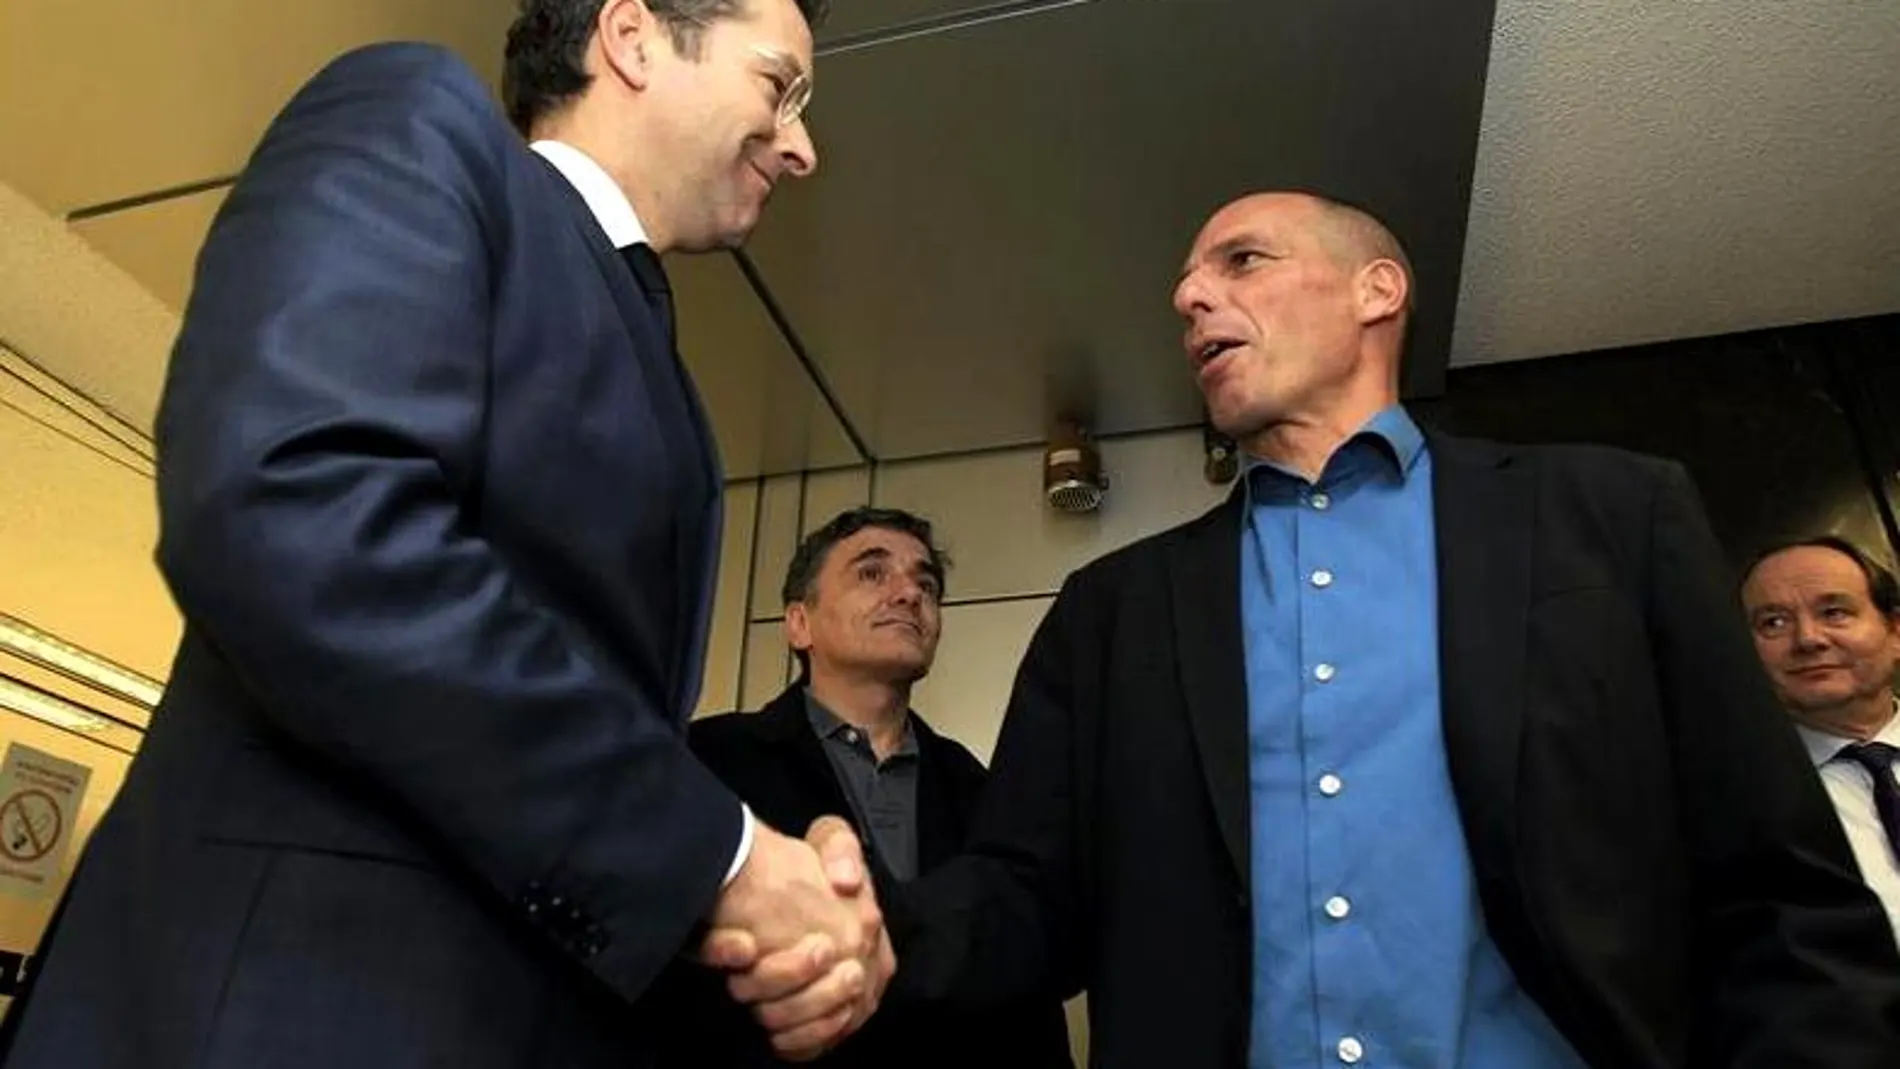 Saludo entre Yanis Varoufakis y el Presidente del Eurogrupo